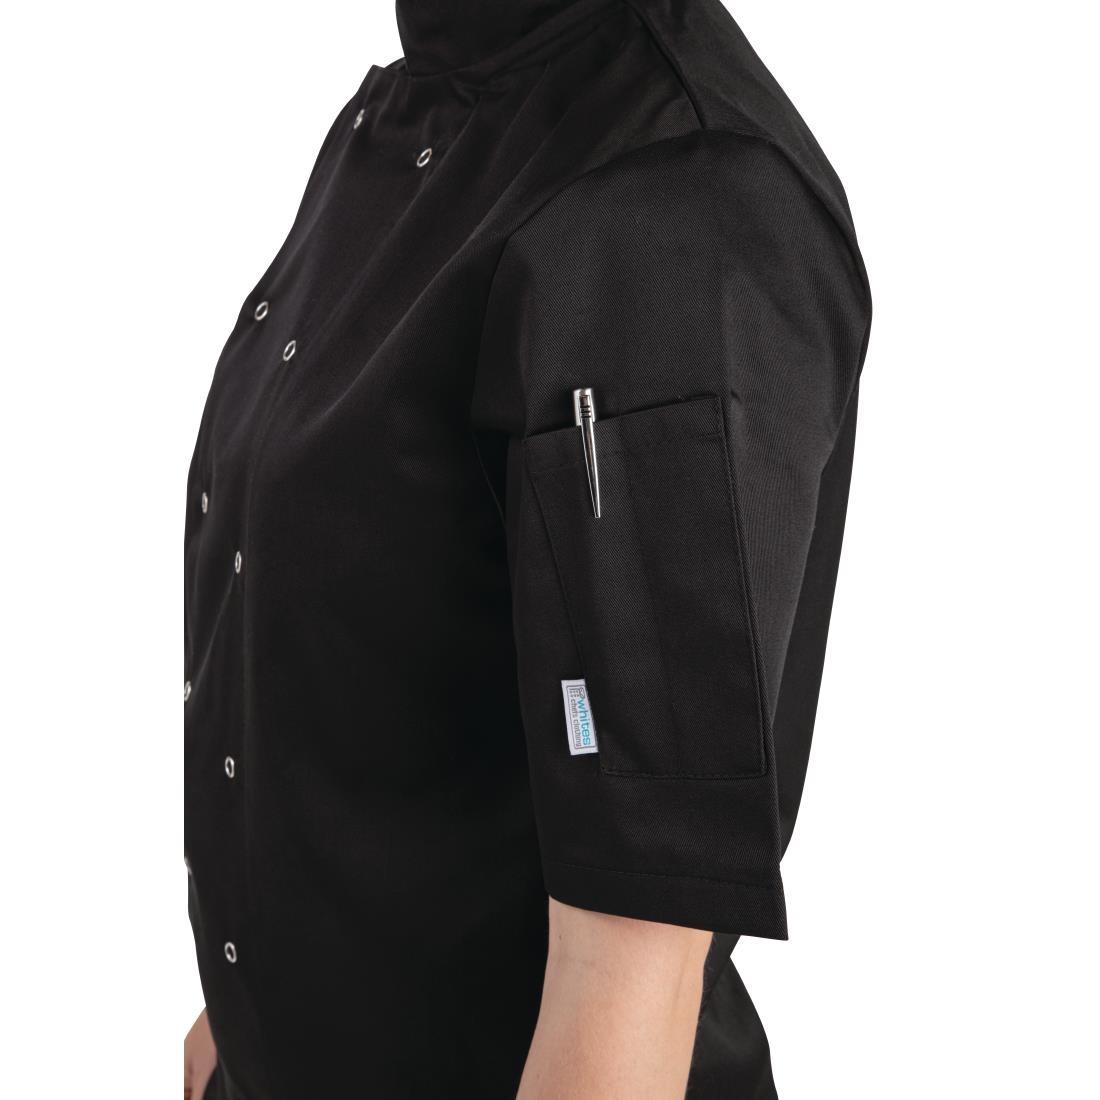 Whites Vegas Unisex Chefs Jacket Short Sleeve Black 3XL - A439-3XL  - 4